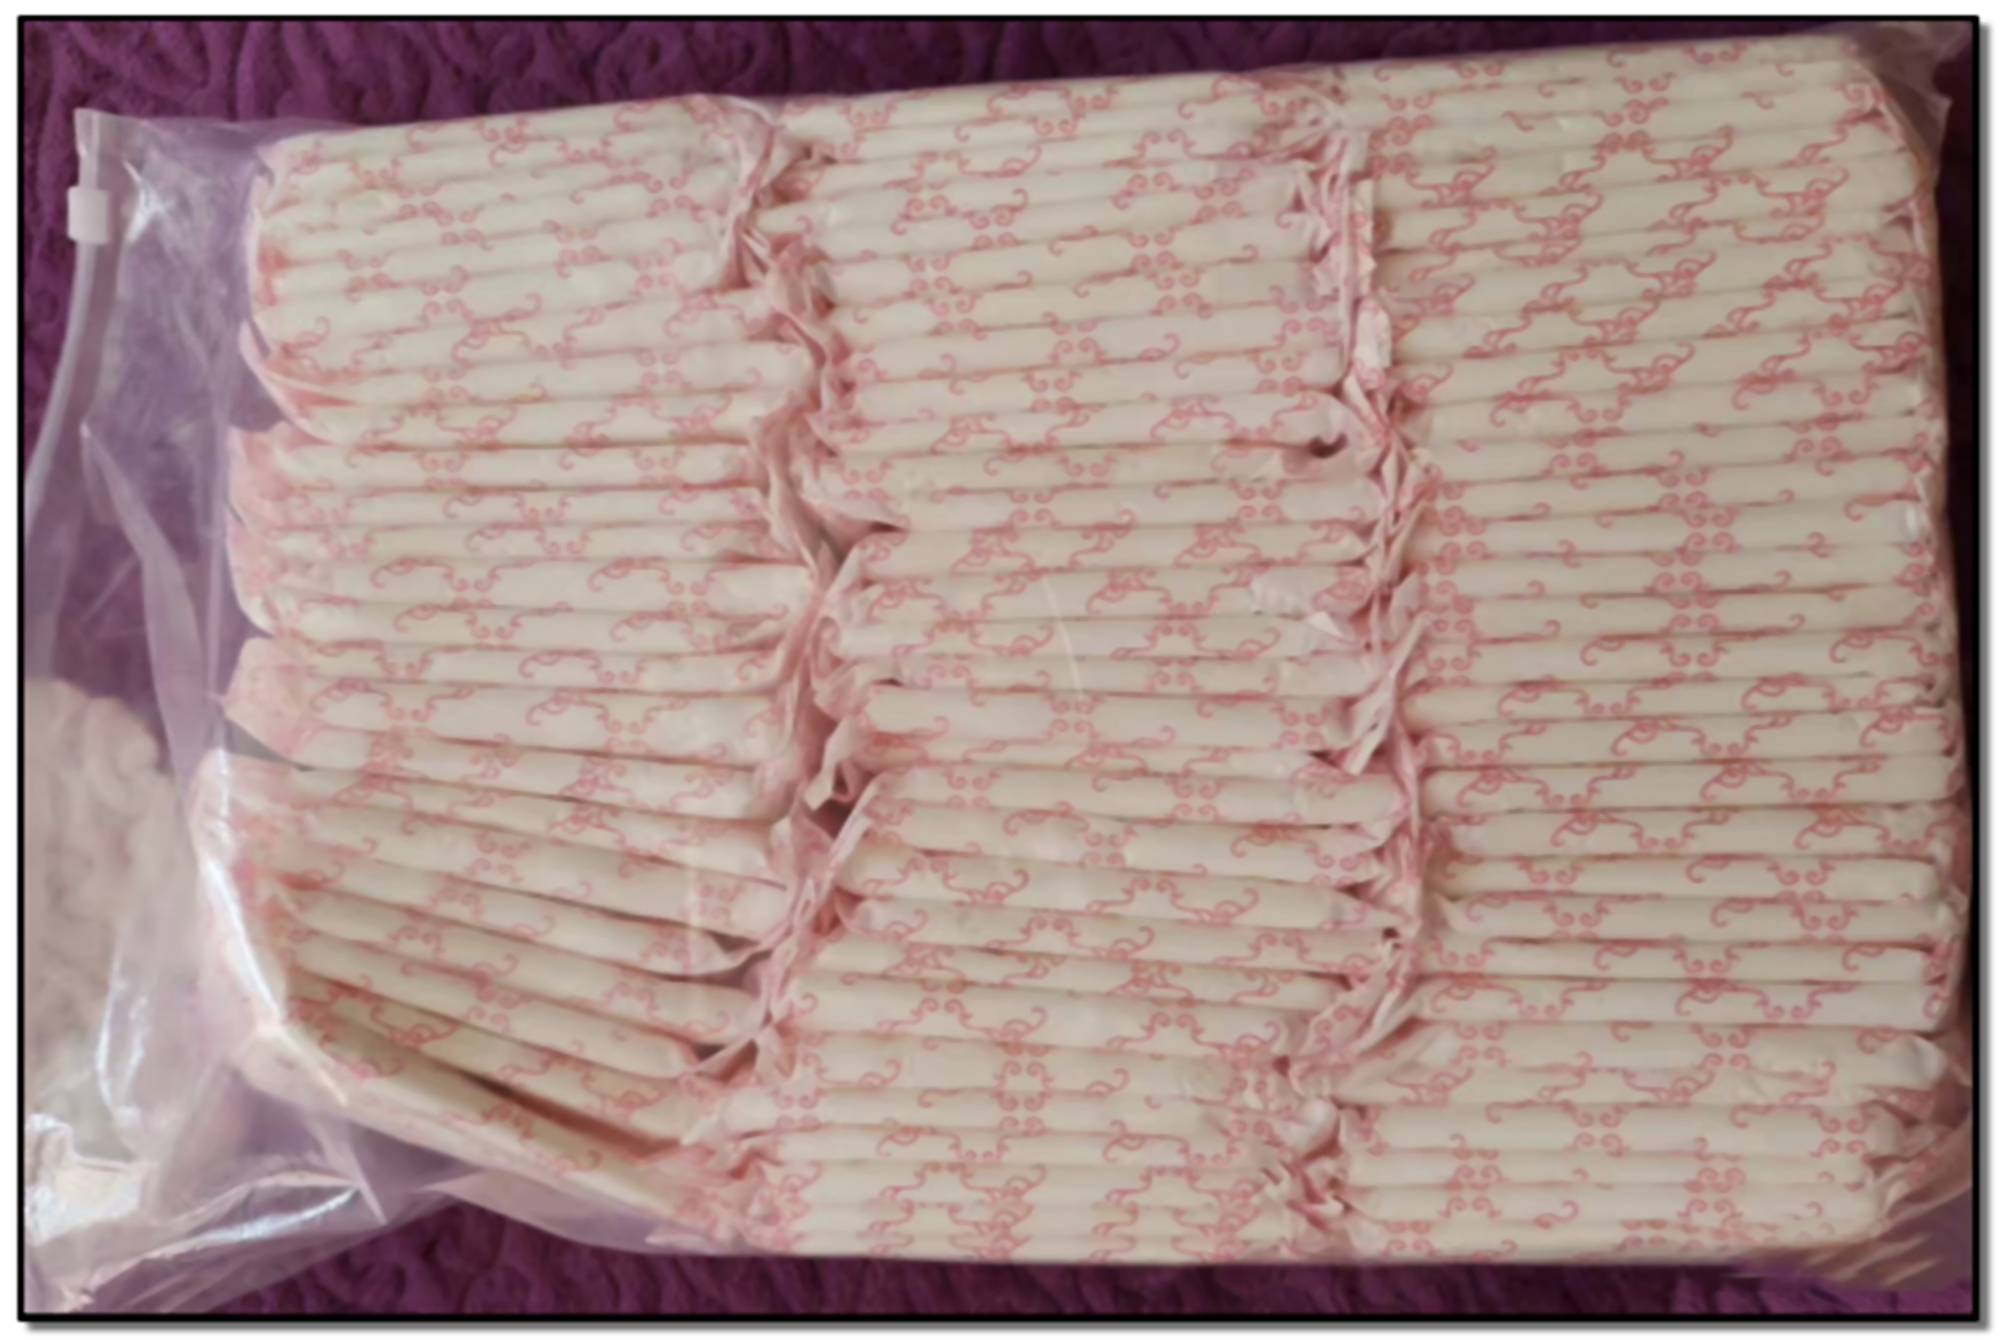 科大女生“卫生巾互助盒”获全棉时代捐赠 - 中国科学技术大学新创校友基金会